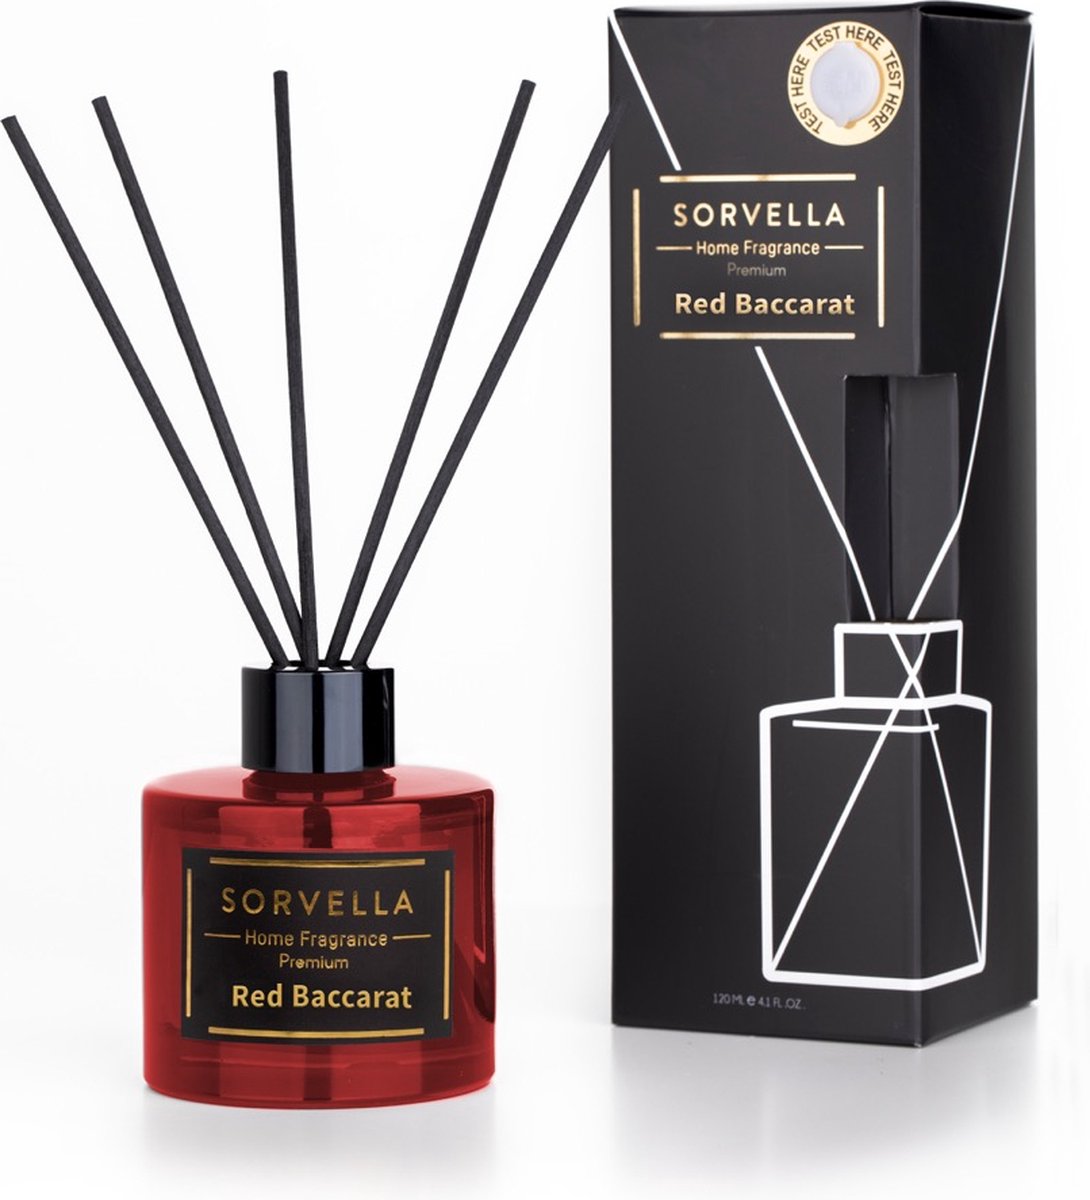 Sorvella - Home Fragrance Red Baccarat - 120ml